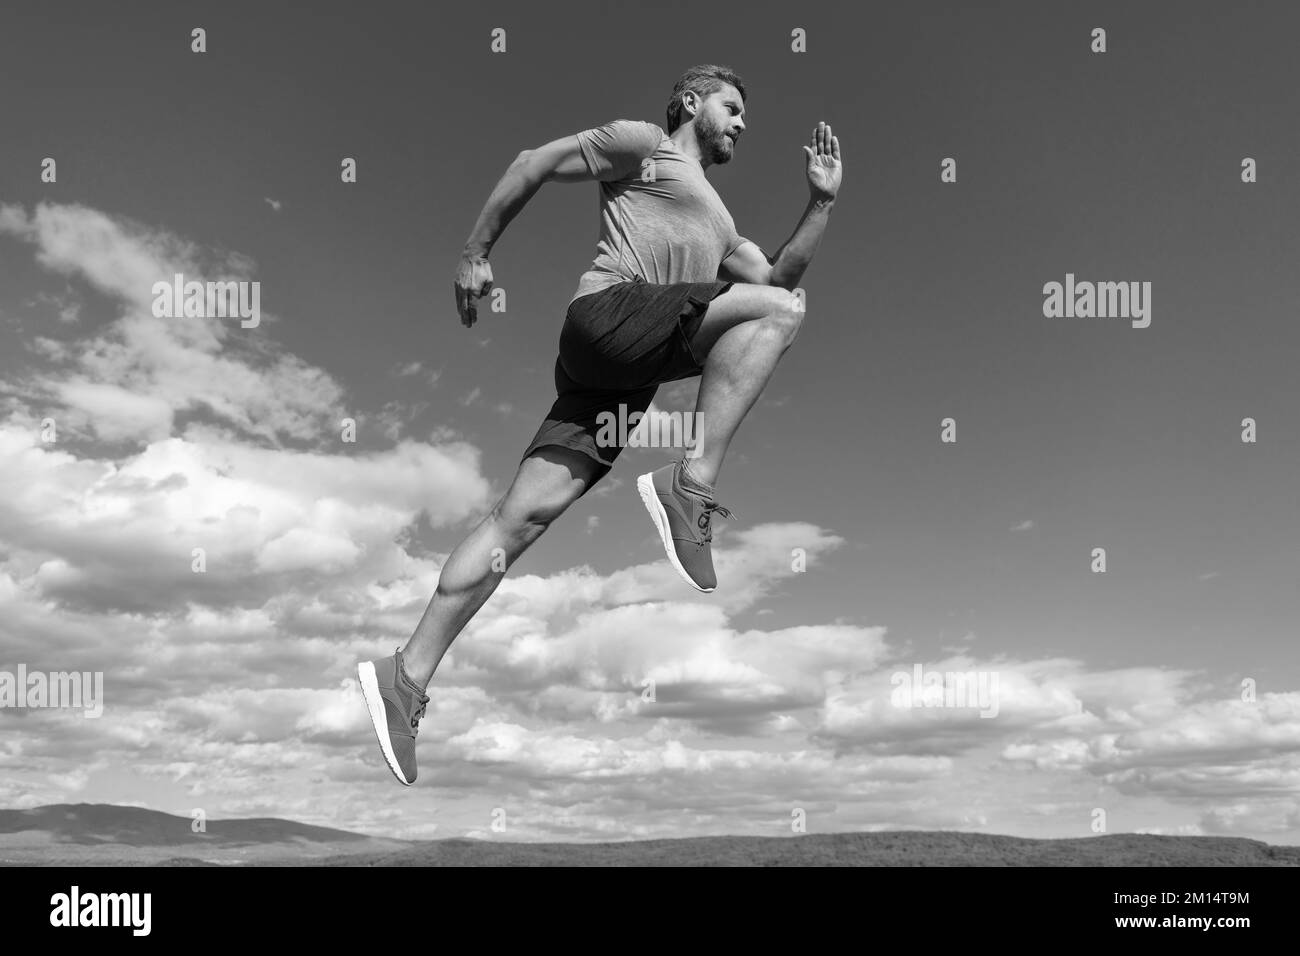 sprinter. Herausforderung und Wettbewerb. Sportathlet laufen schnell, um zu gewinnen. Workout-Aktivität. Stockfoto